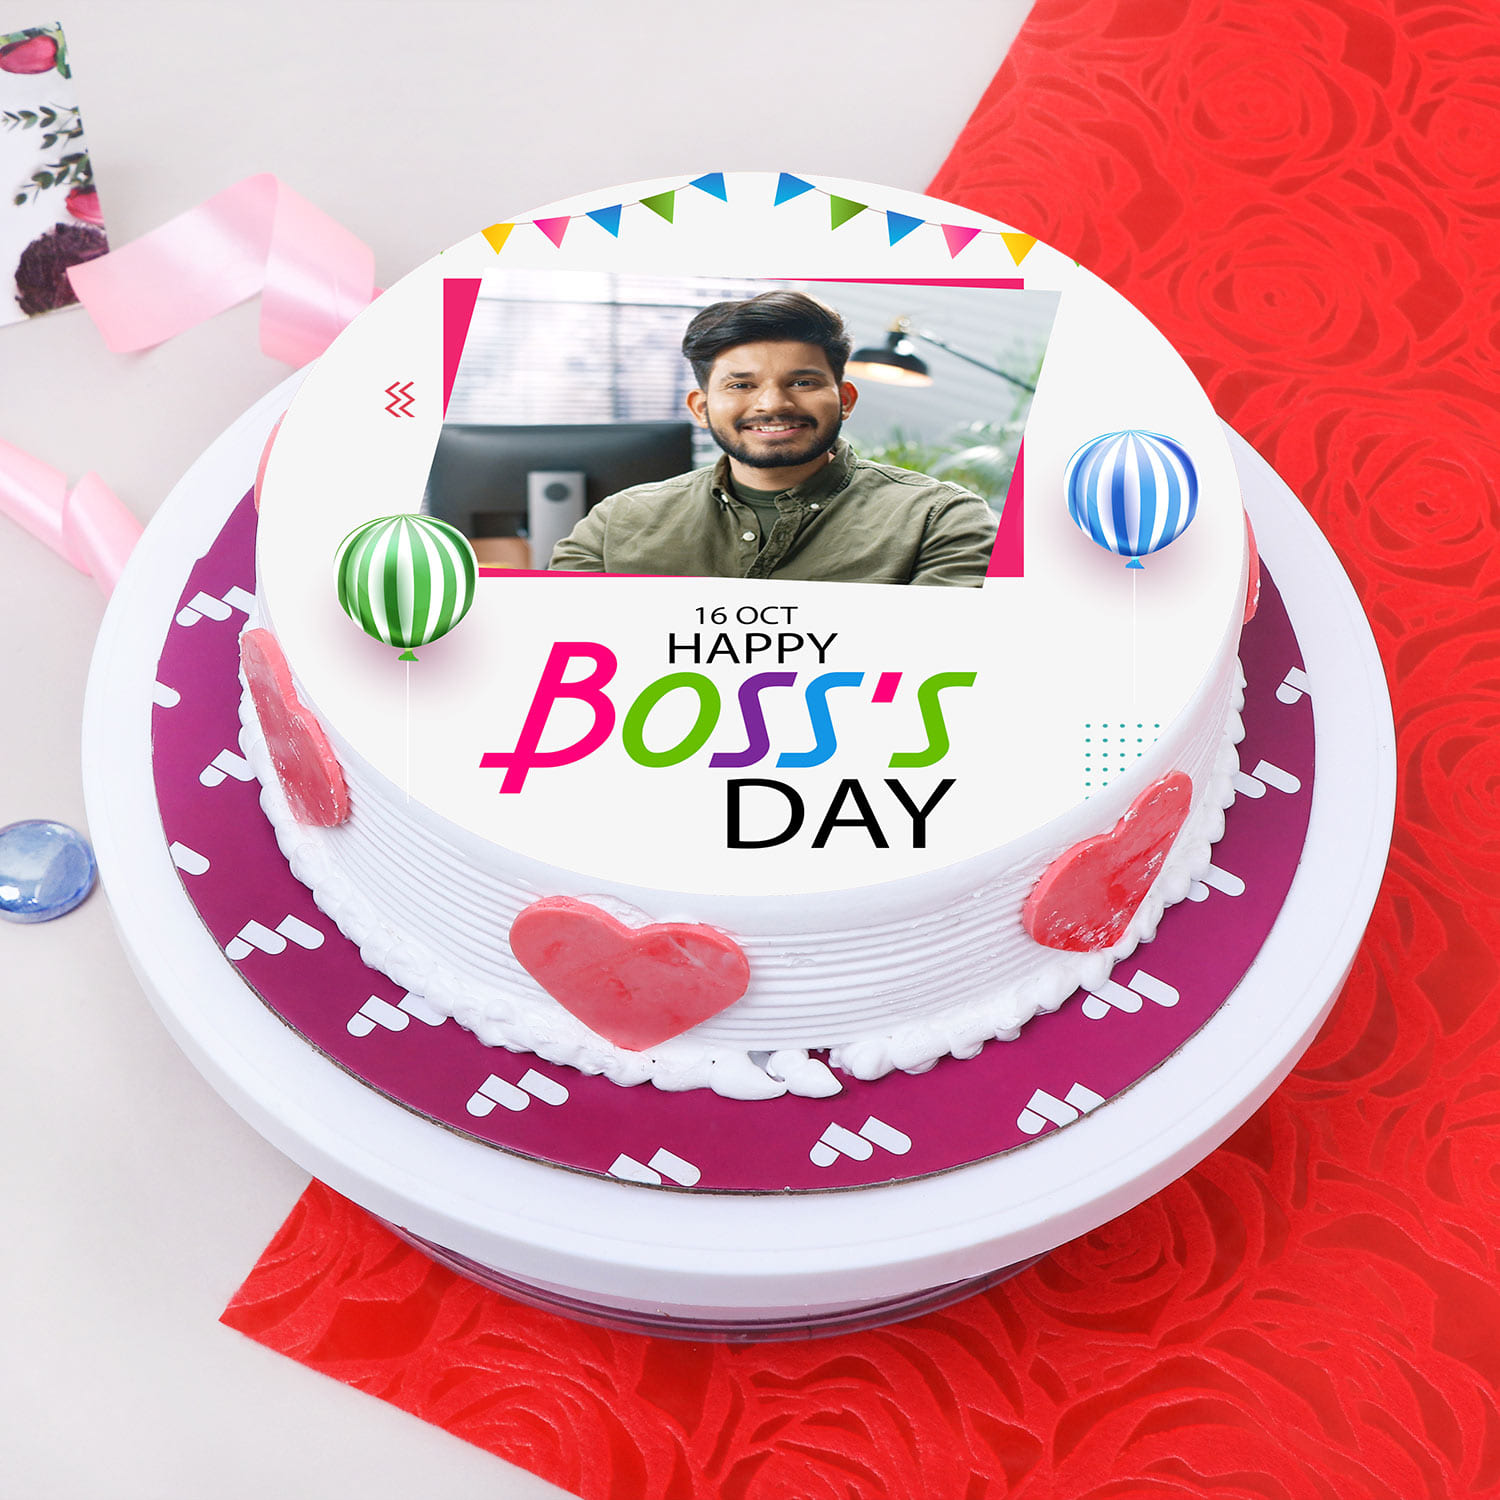 1st birthday cake | baby boss cake theme | baby boss cake design | 1kg cake  design | boss baby cake - YouTube